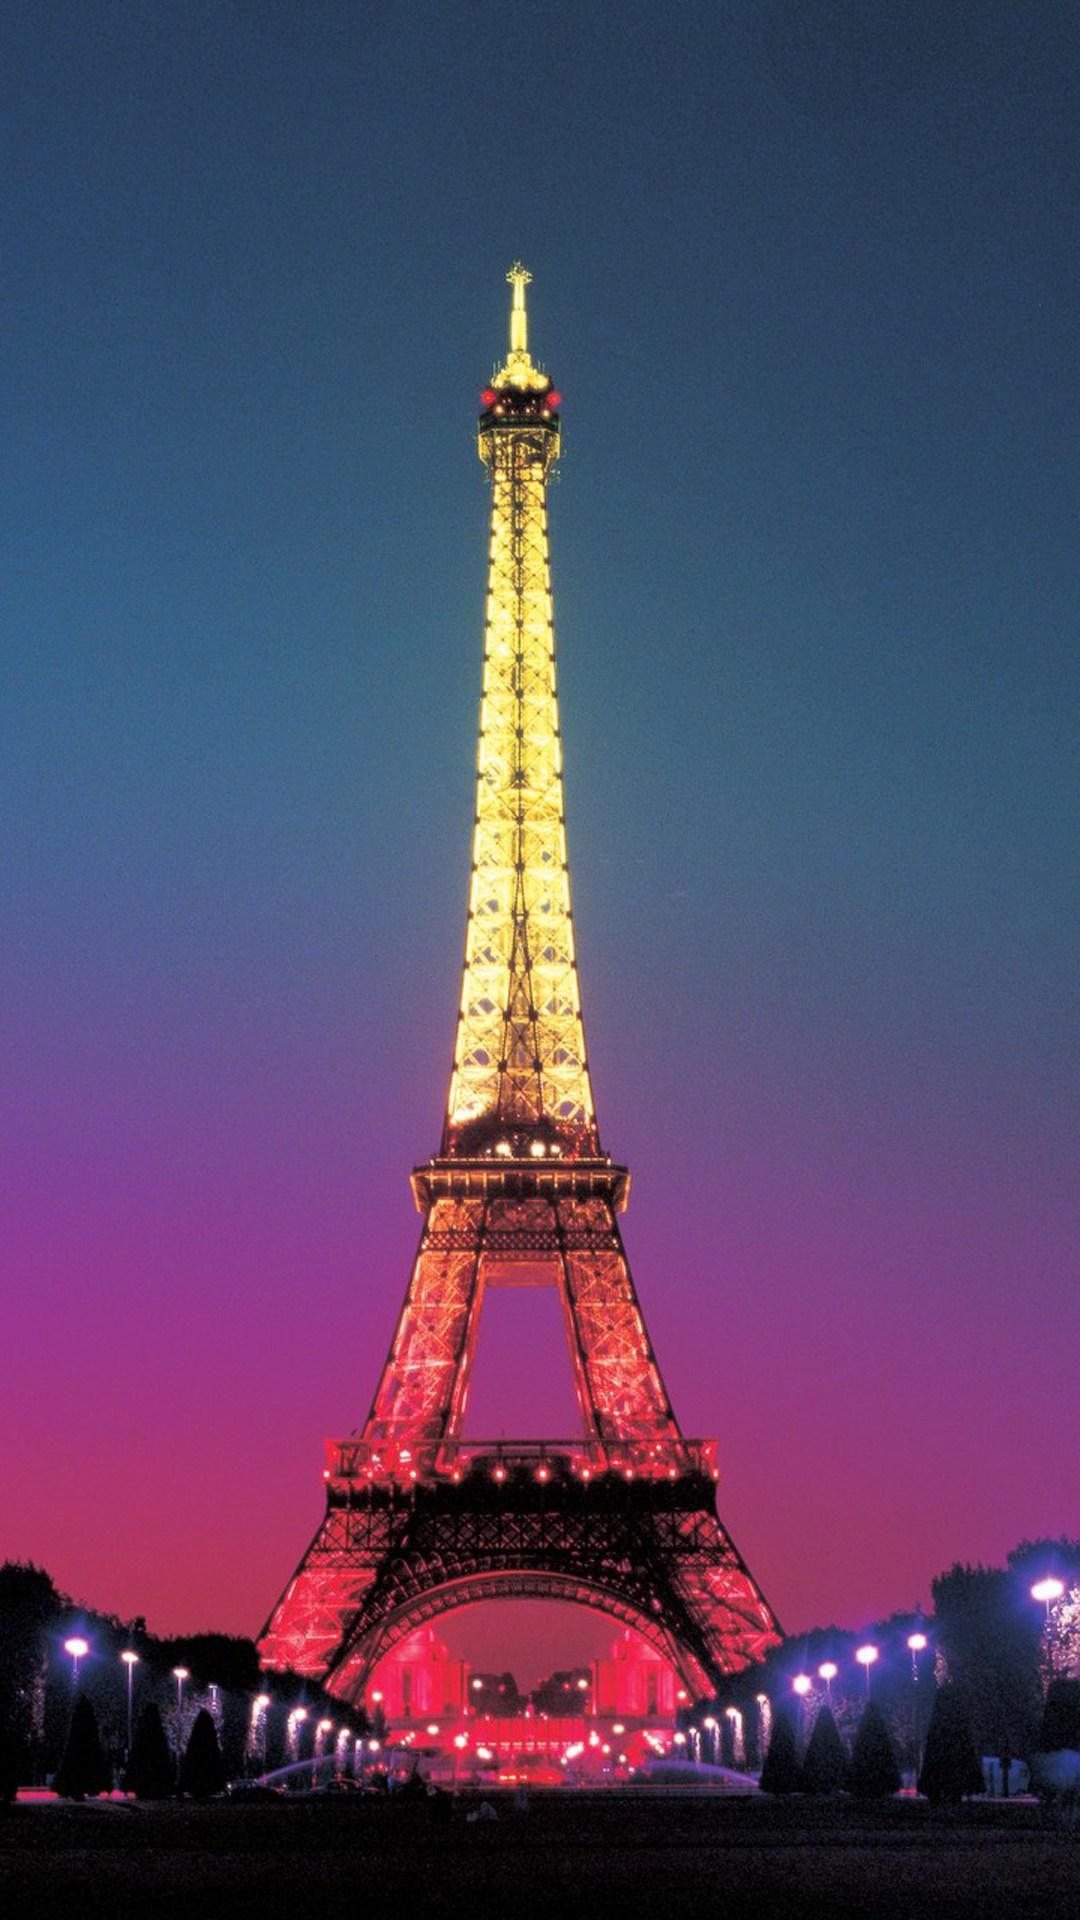 Eiffel Tower at Night Paris France Wallpaper HD Wallpaper ID